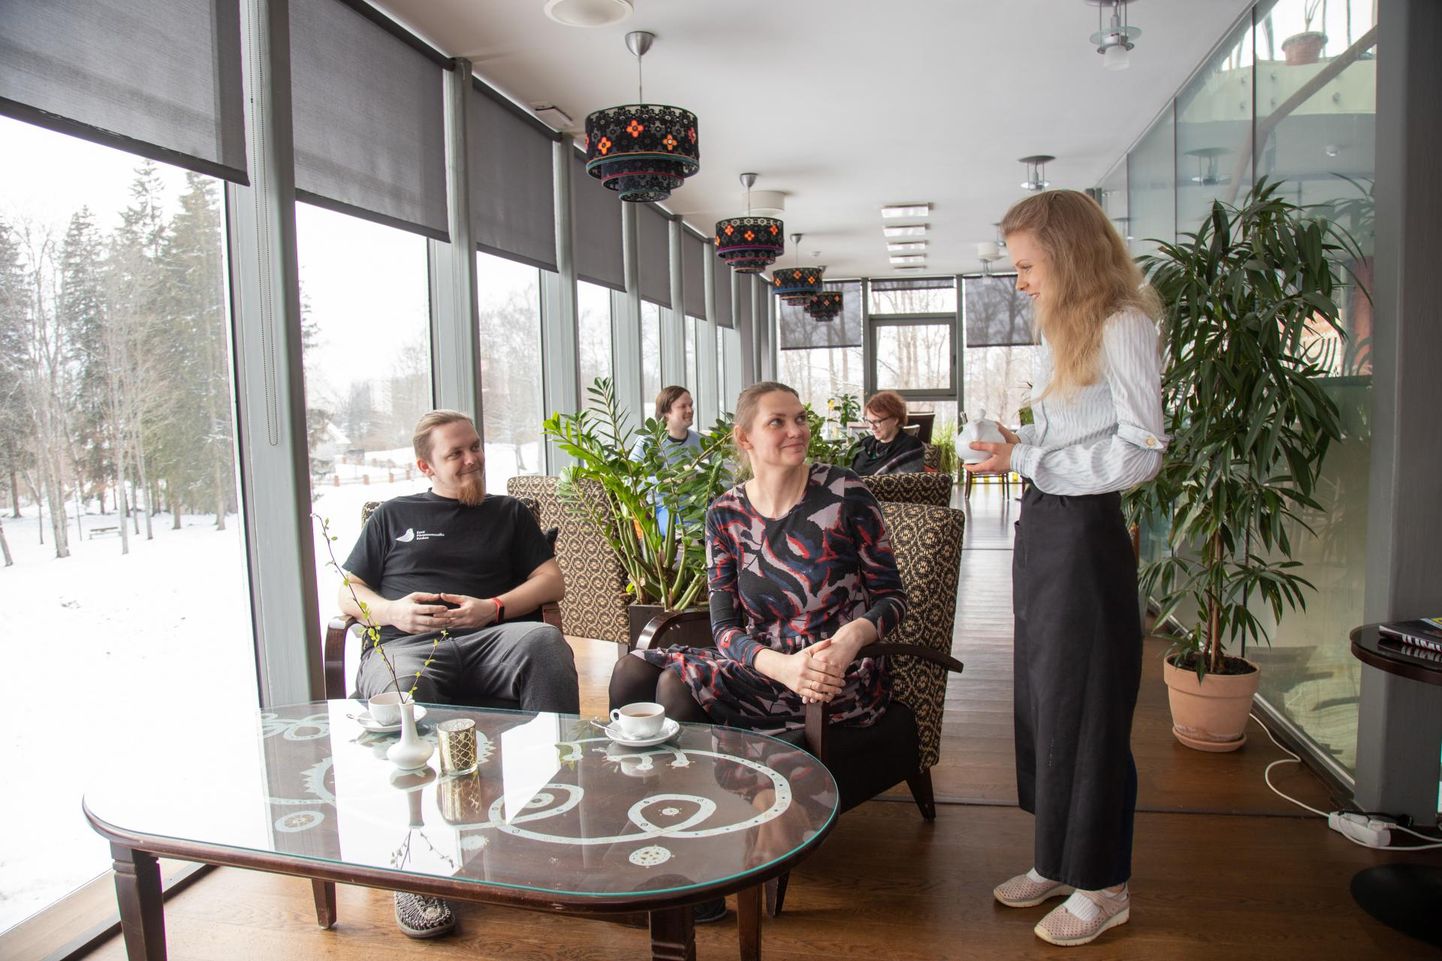 Viljandi pärimusmuusika aida töötajad Marko Peder ja Silja Liivamägi proovisid esimest kellaviieteed taasavatud Aida kohvikus. Neid teenindas Triinu Uusen.